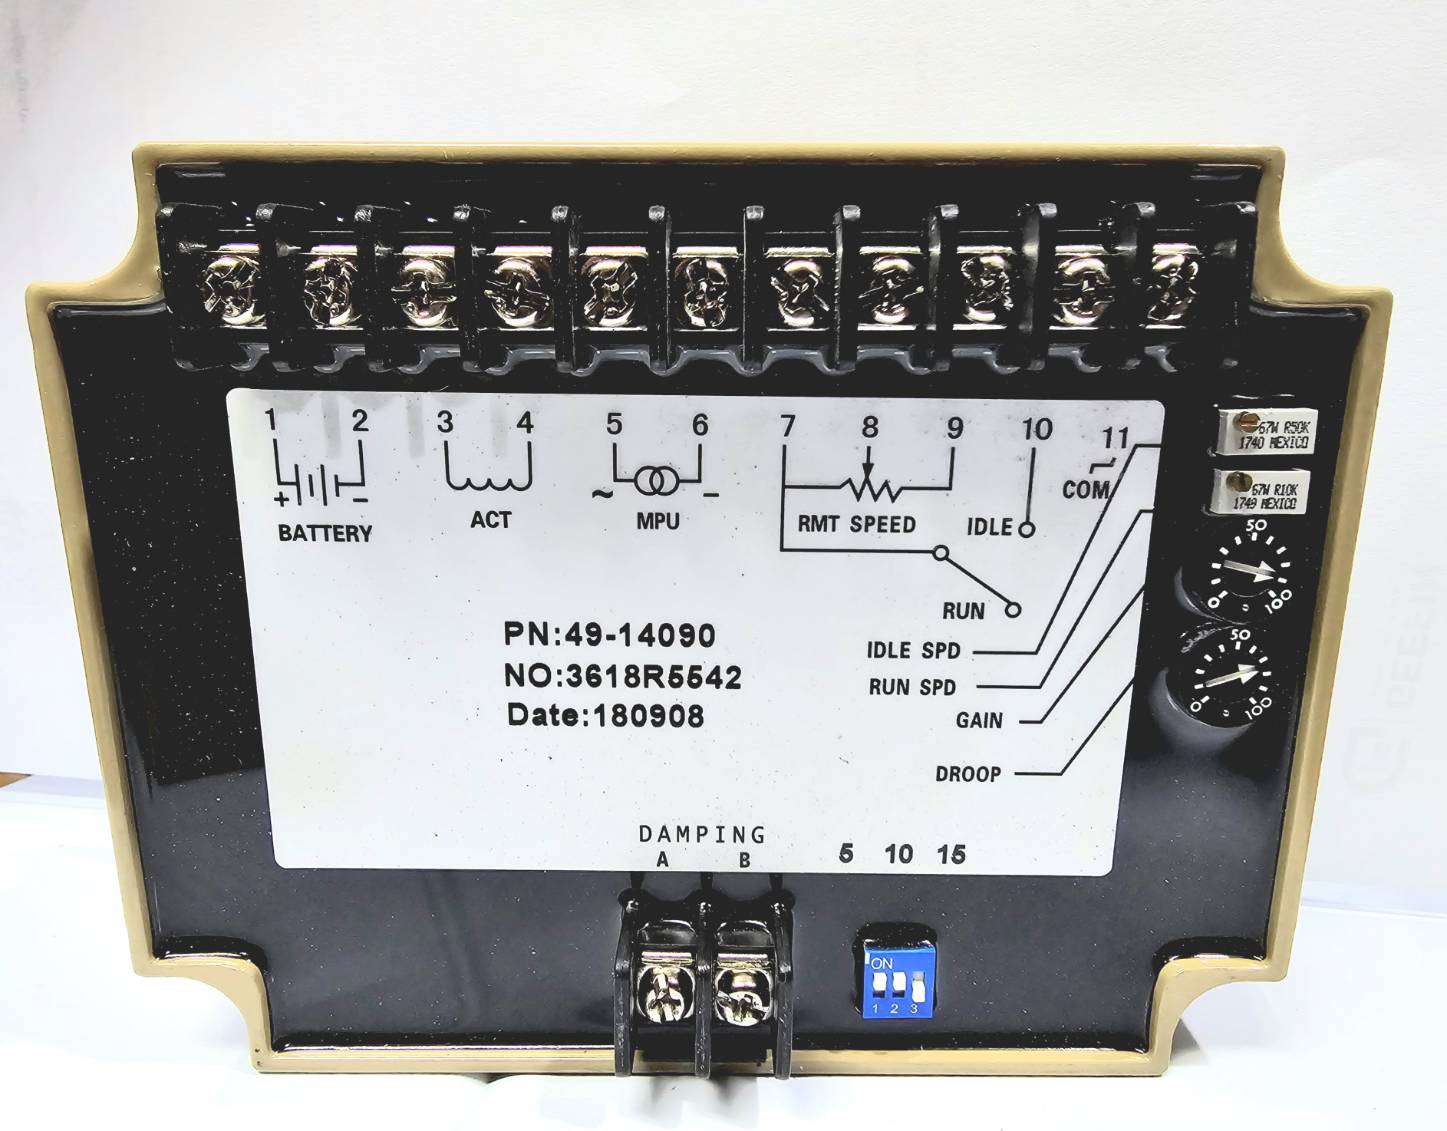 ชุดควบคุมเครื่องควบคุมความเร็วเครื่องยนต์เครื่องกำเนิดไฟฟ้า (C-4914090C)